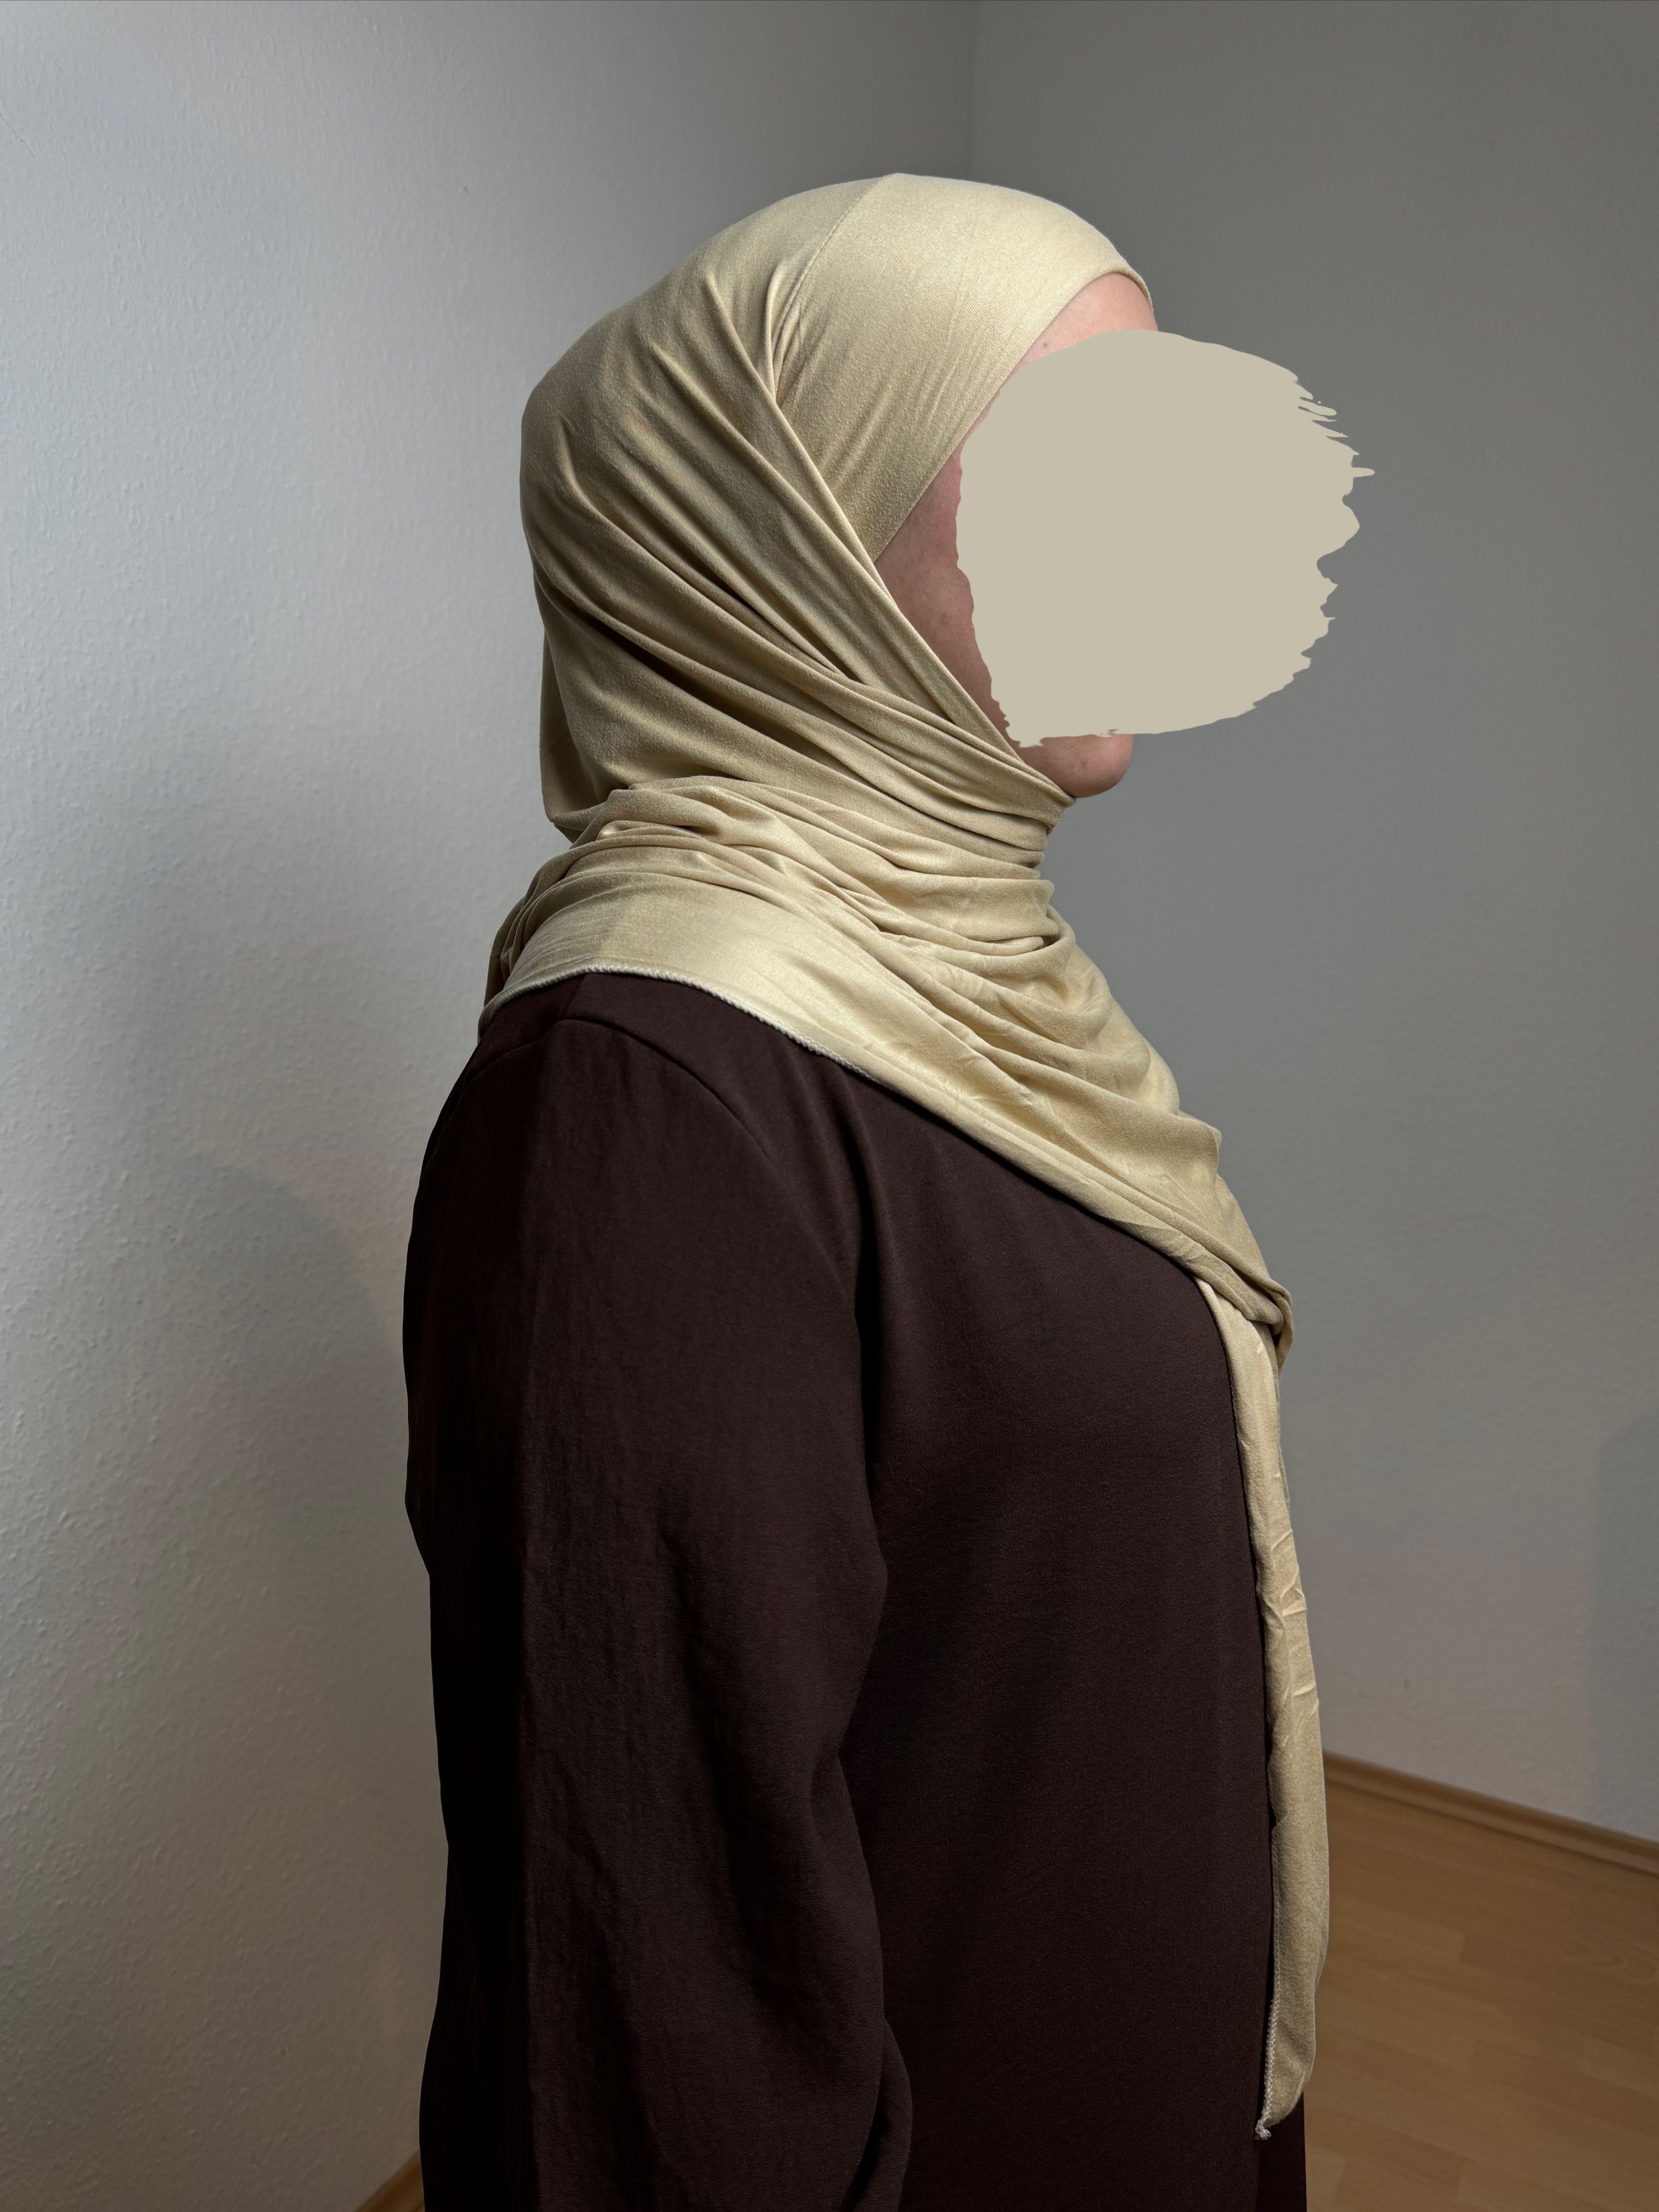 HIJABIFY Hijab Easy Hijab mit integrierter unter Tuch (antirutsch) Jersey-Stoff 2 in 1 Hijab/ Hidschab/ Kopftuch Sandfarben